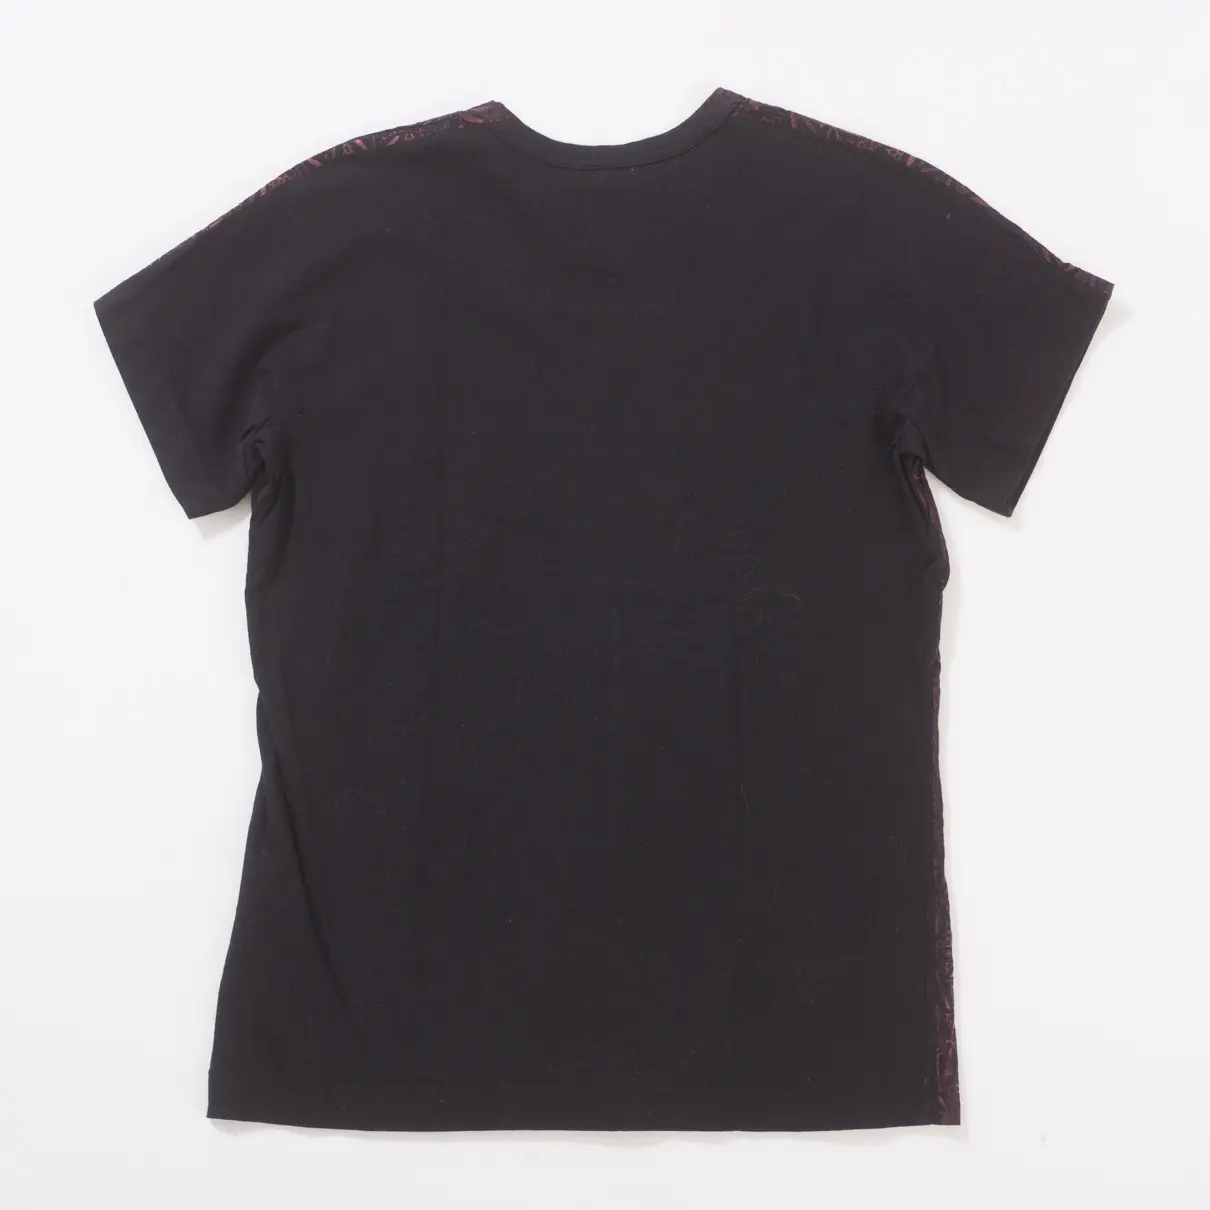 Comme Des Garcons Black Cotton Top for sale - Vintage